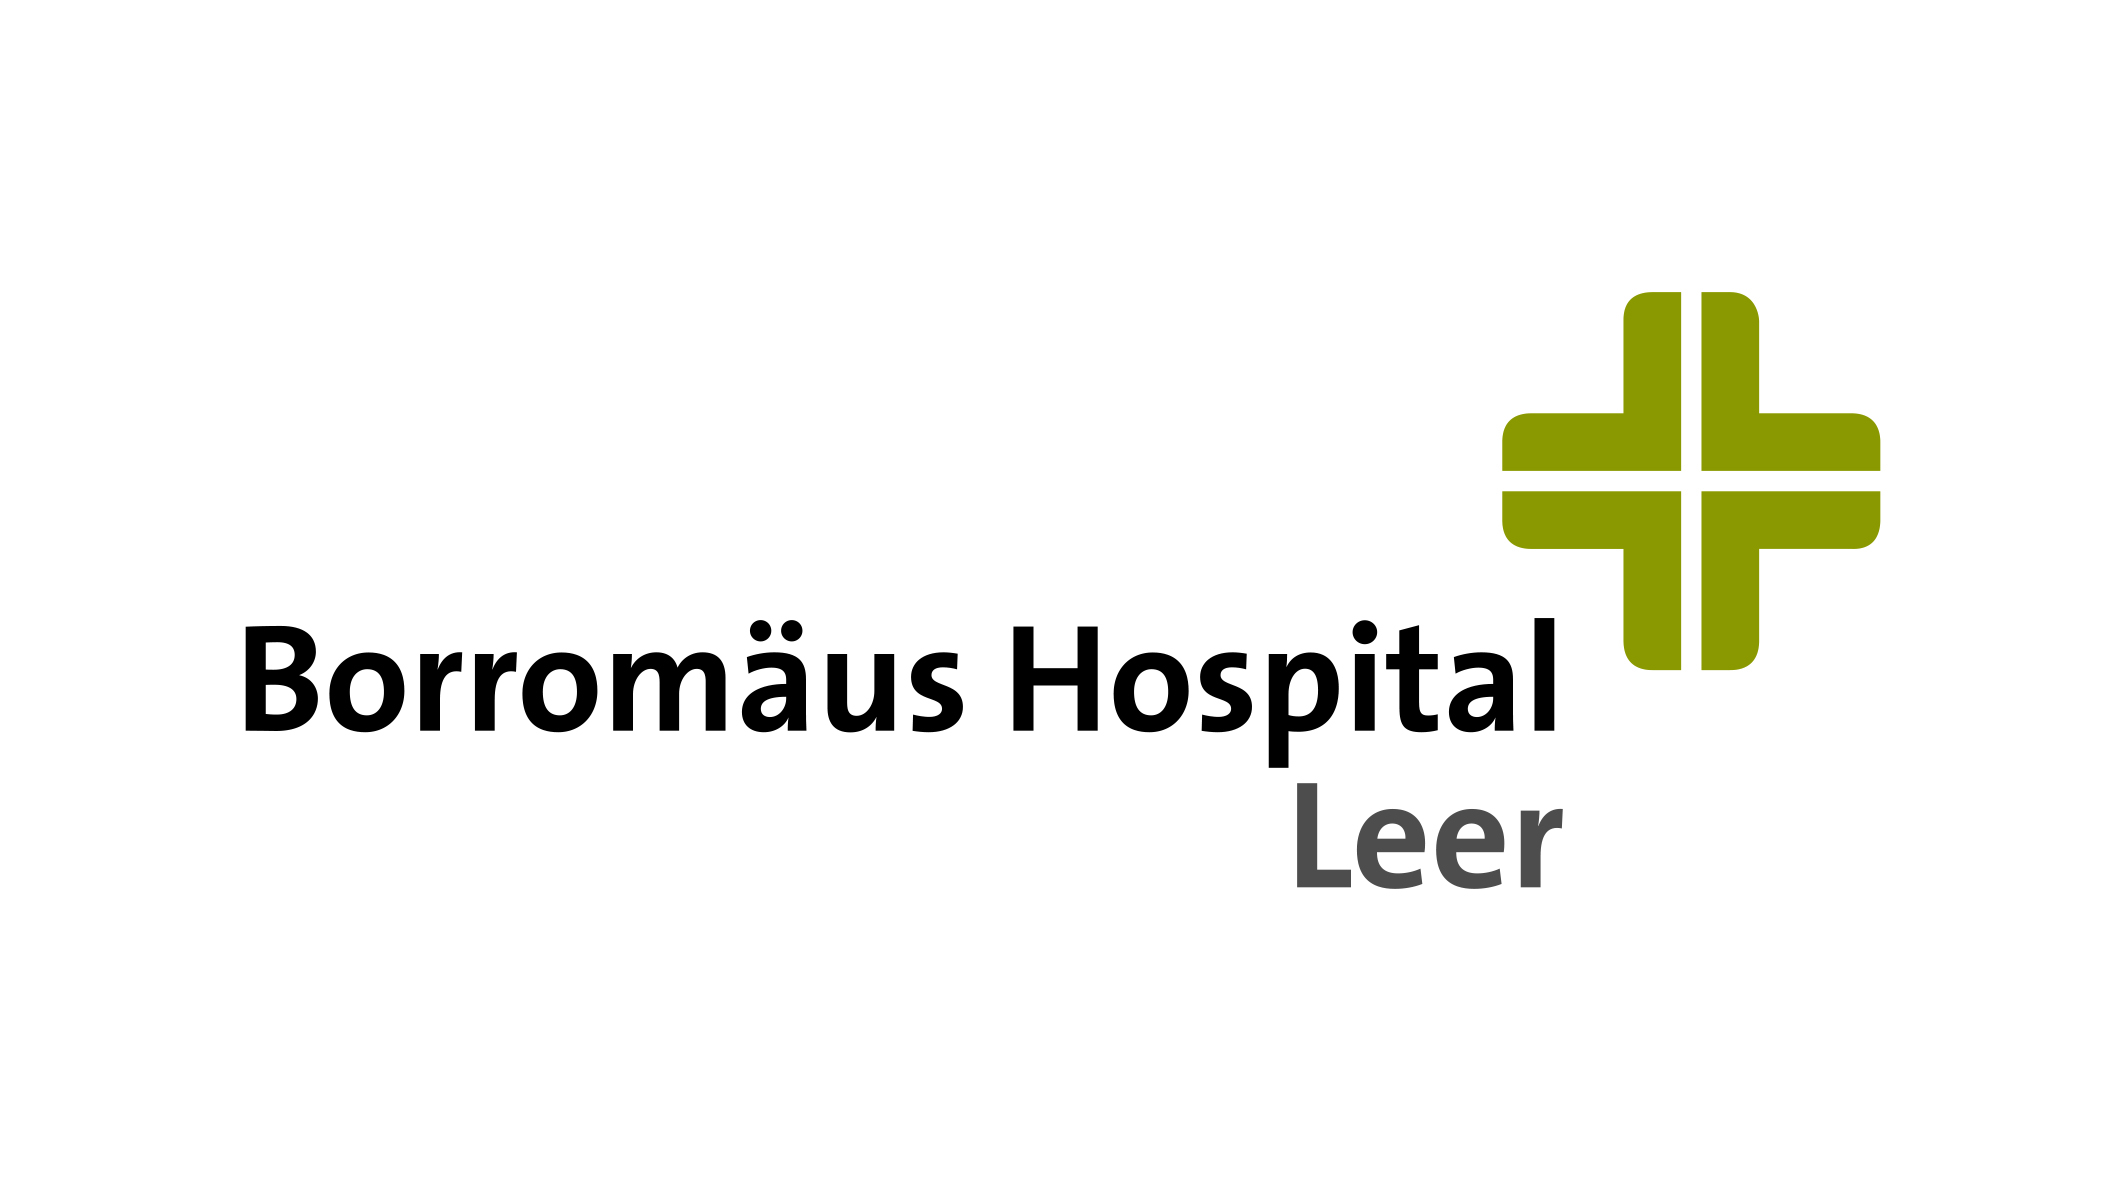 Borromäus Hospital Leer gGmbH